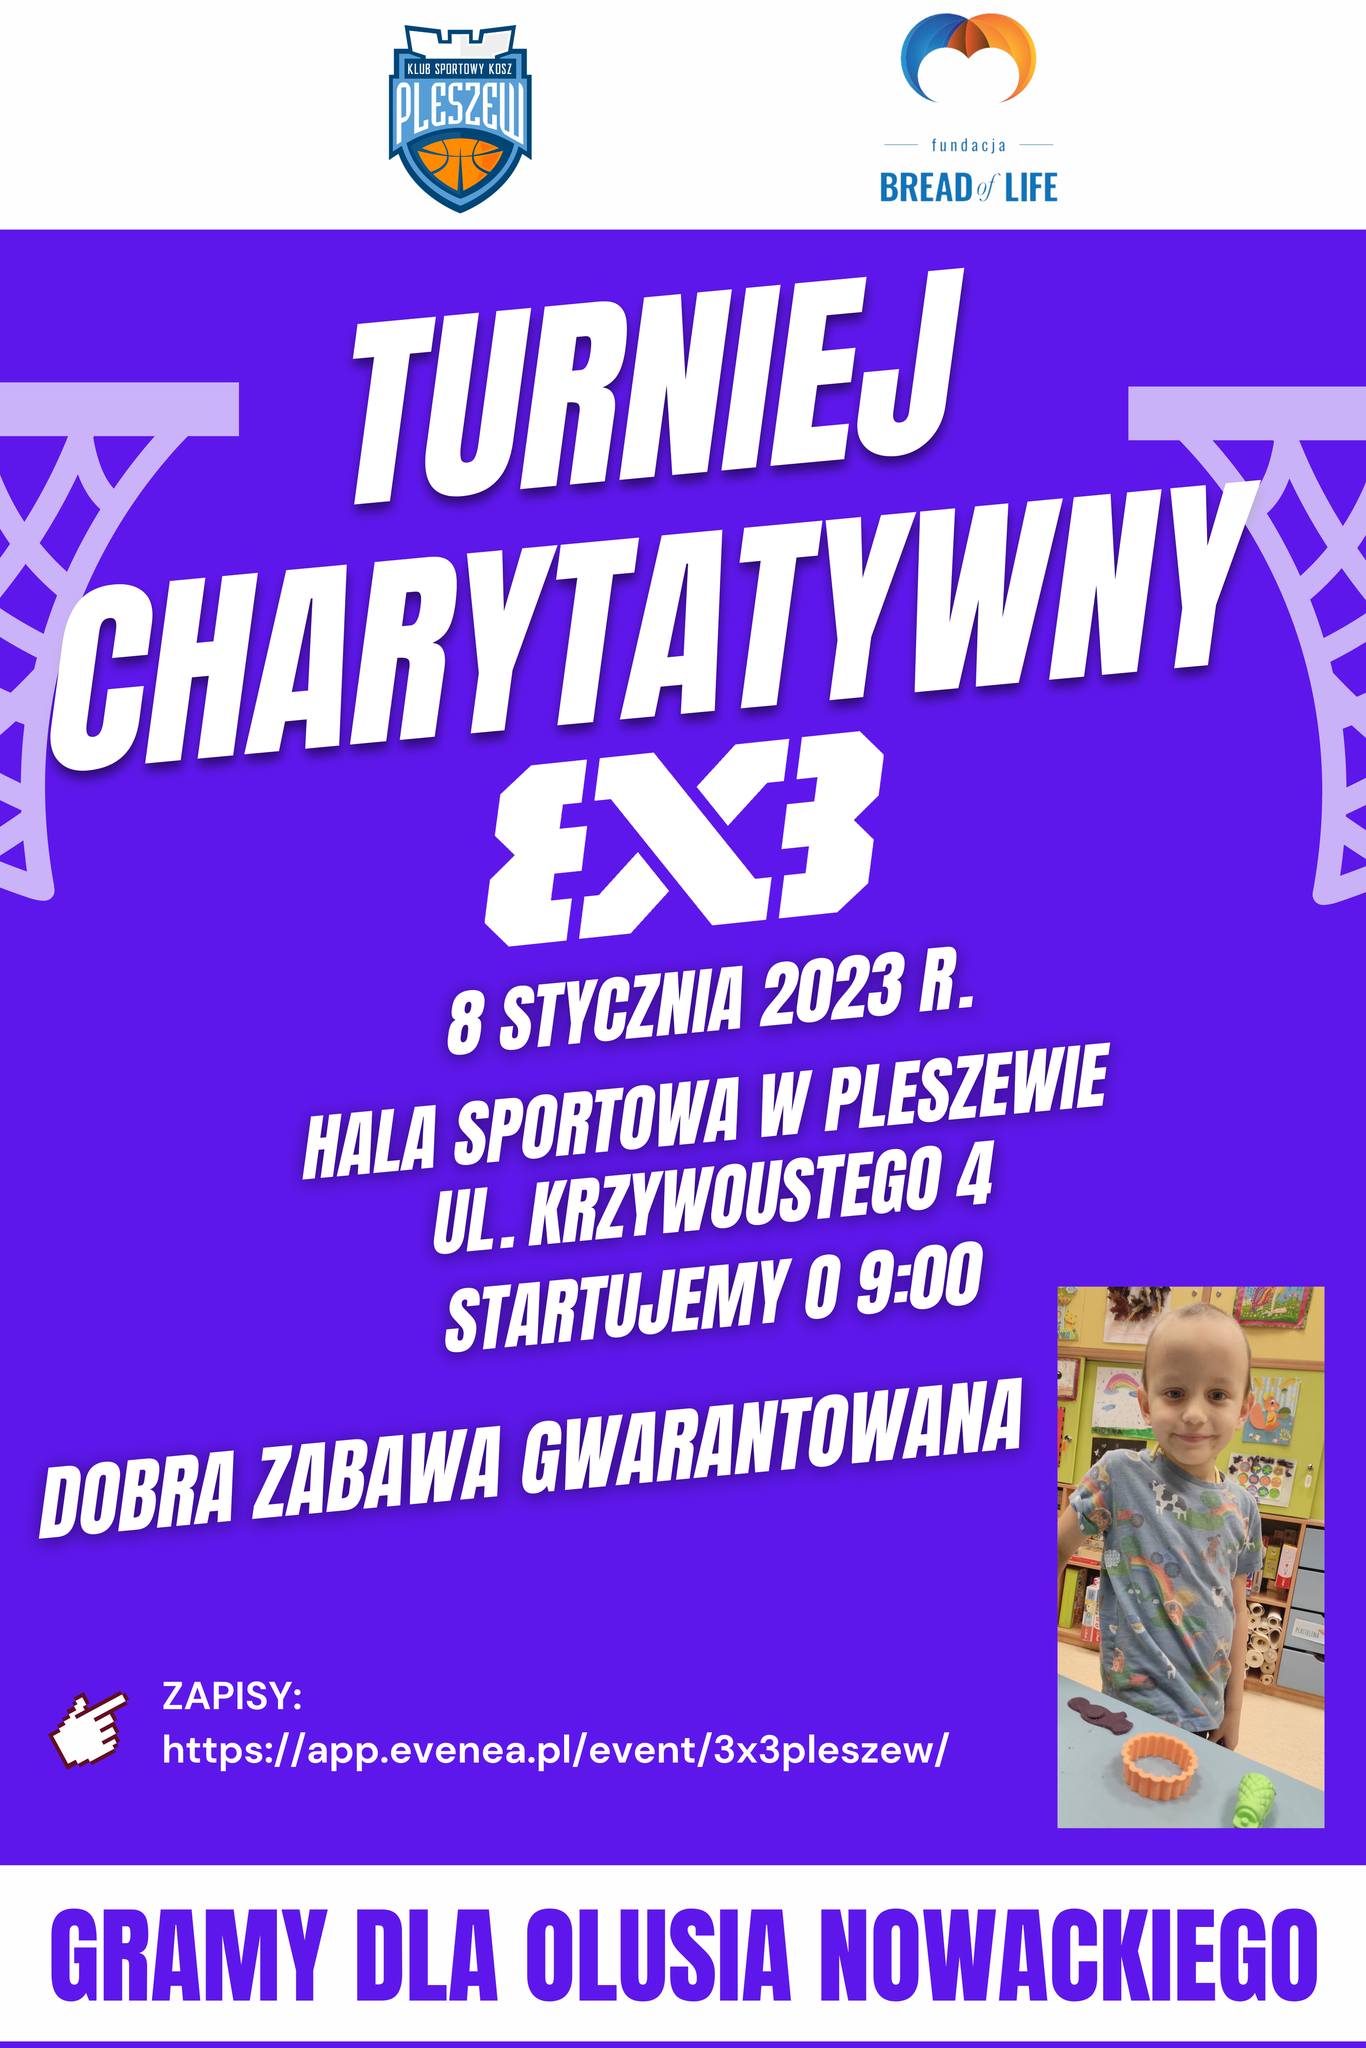 Plakat turnieju charytatywnego w koszykówkę 3x3 dla chorego Olusia Nowackiego odbywającego się 8 stycznia 2023 roku w Hali Widowiskowo-Sportowej w Pleszewie